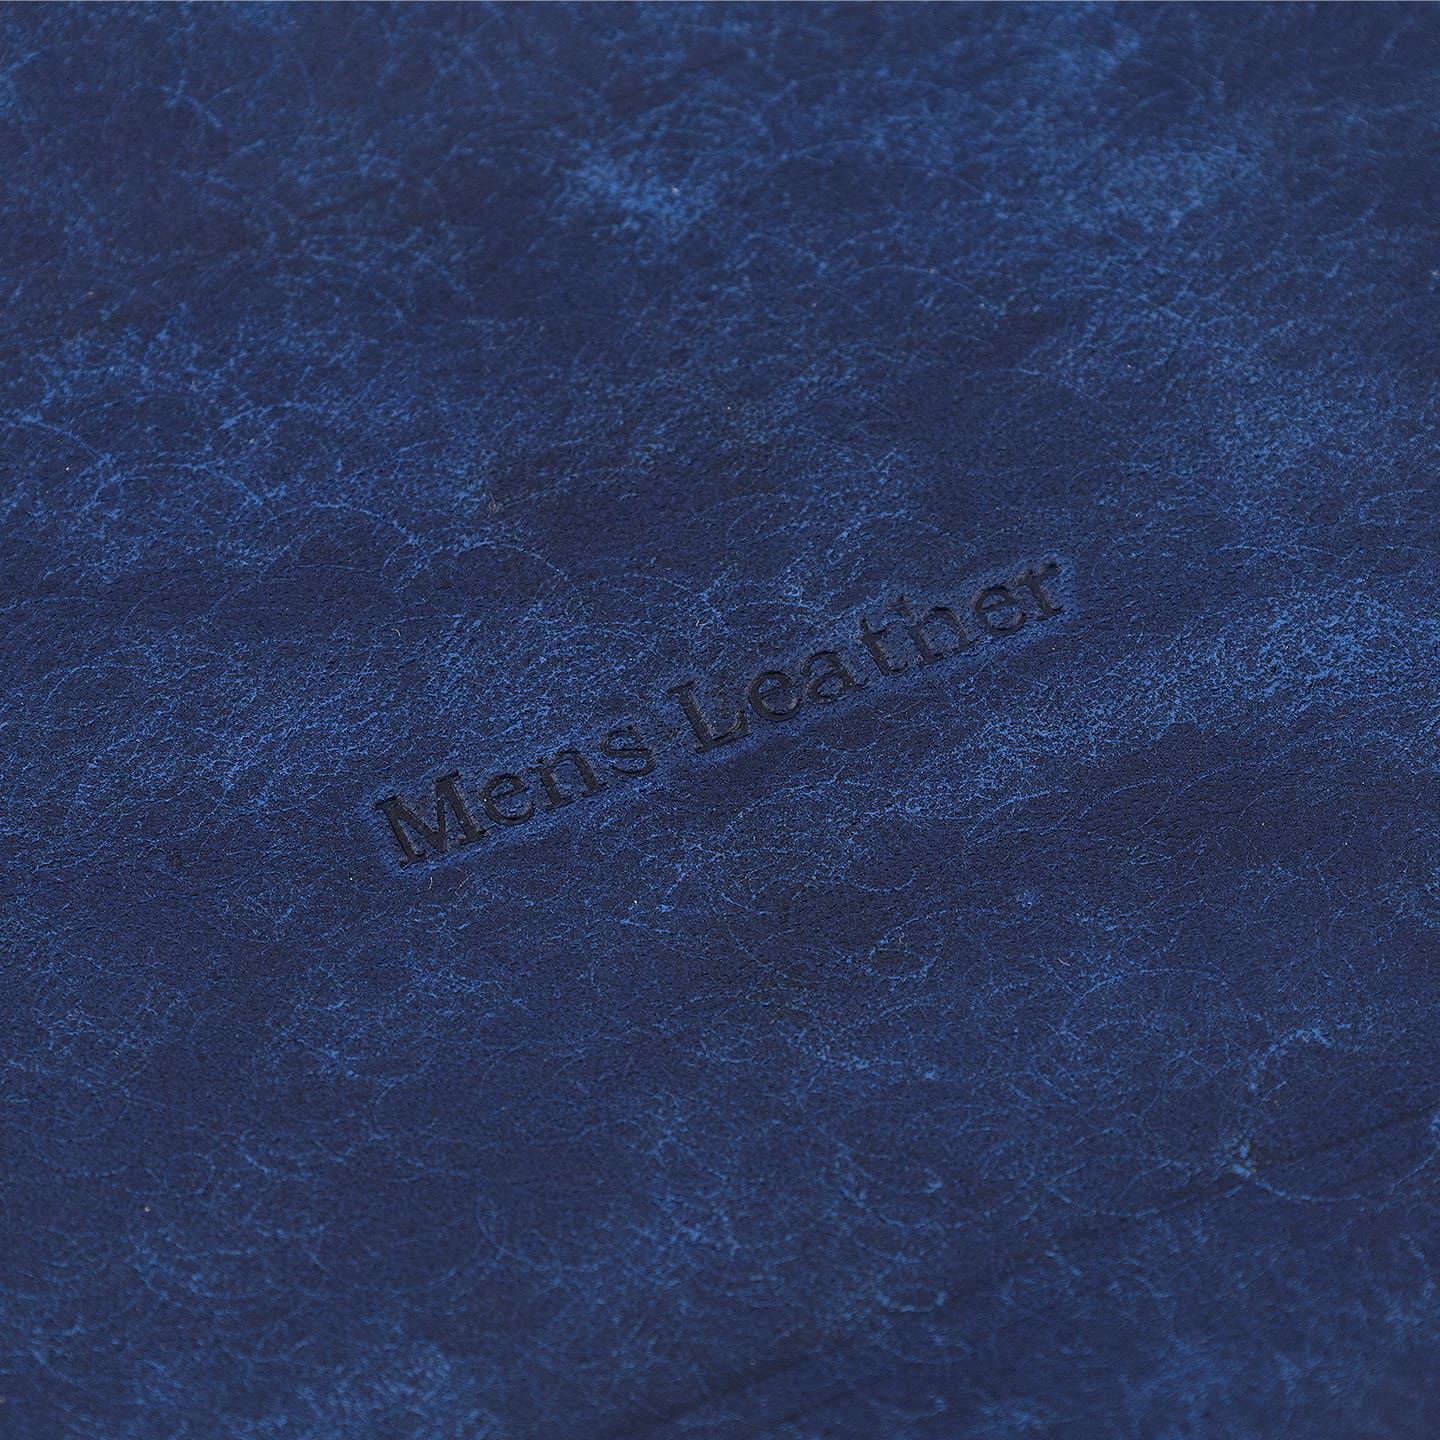 表面（マルゴー）：Blue、裏面（イングラサット）：Navy、糸色：Black、名入れ刻印：素押し、名入れ文字：Mens Leather